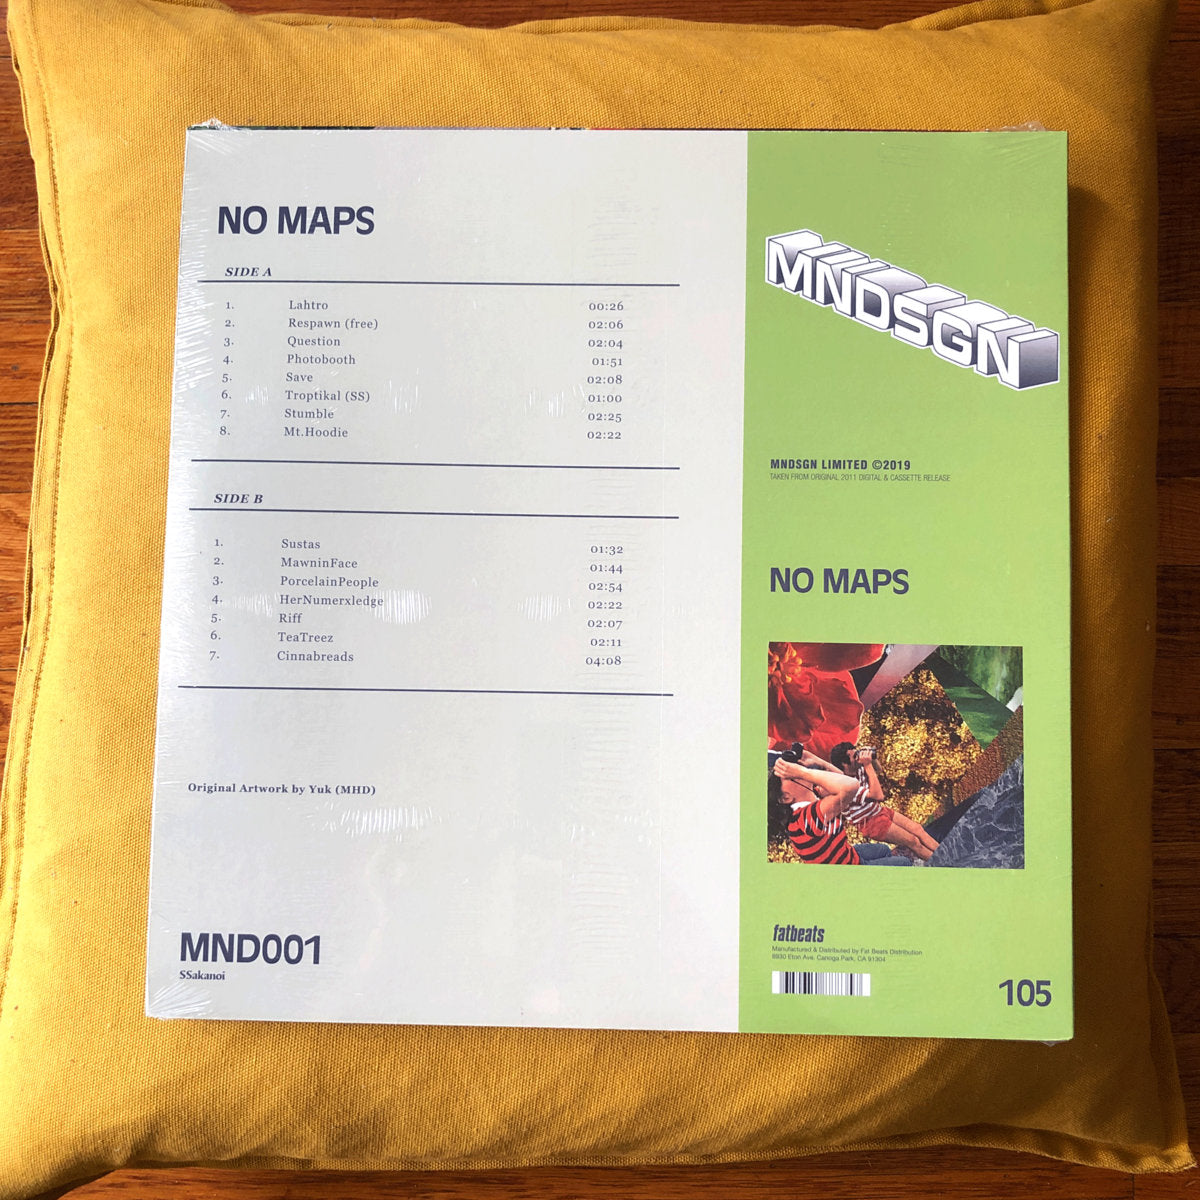 NoMaps 12" Vinyl